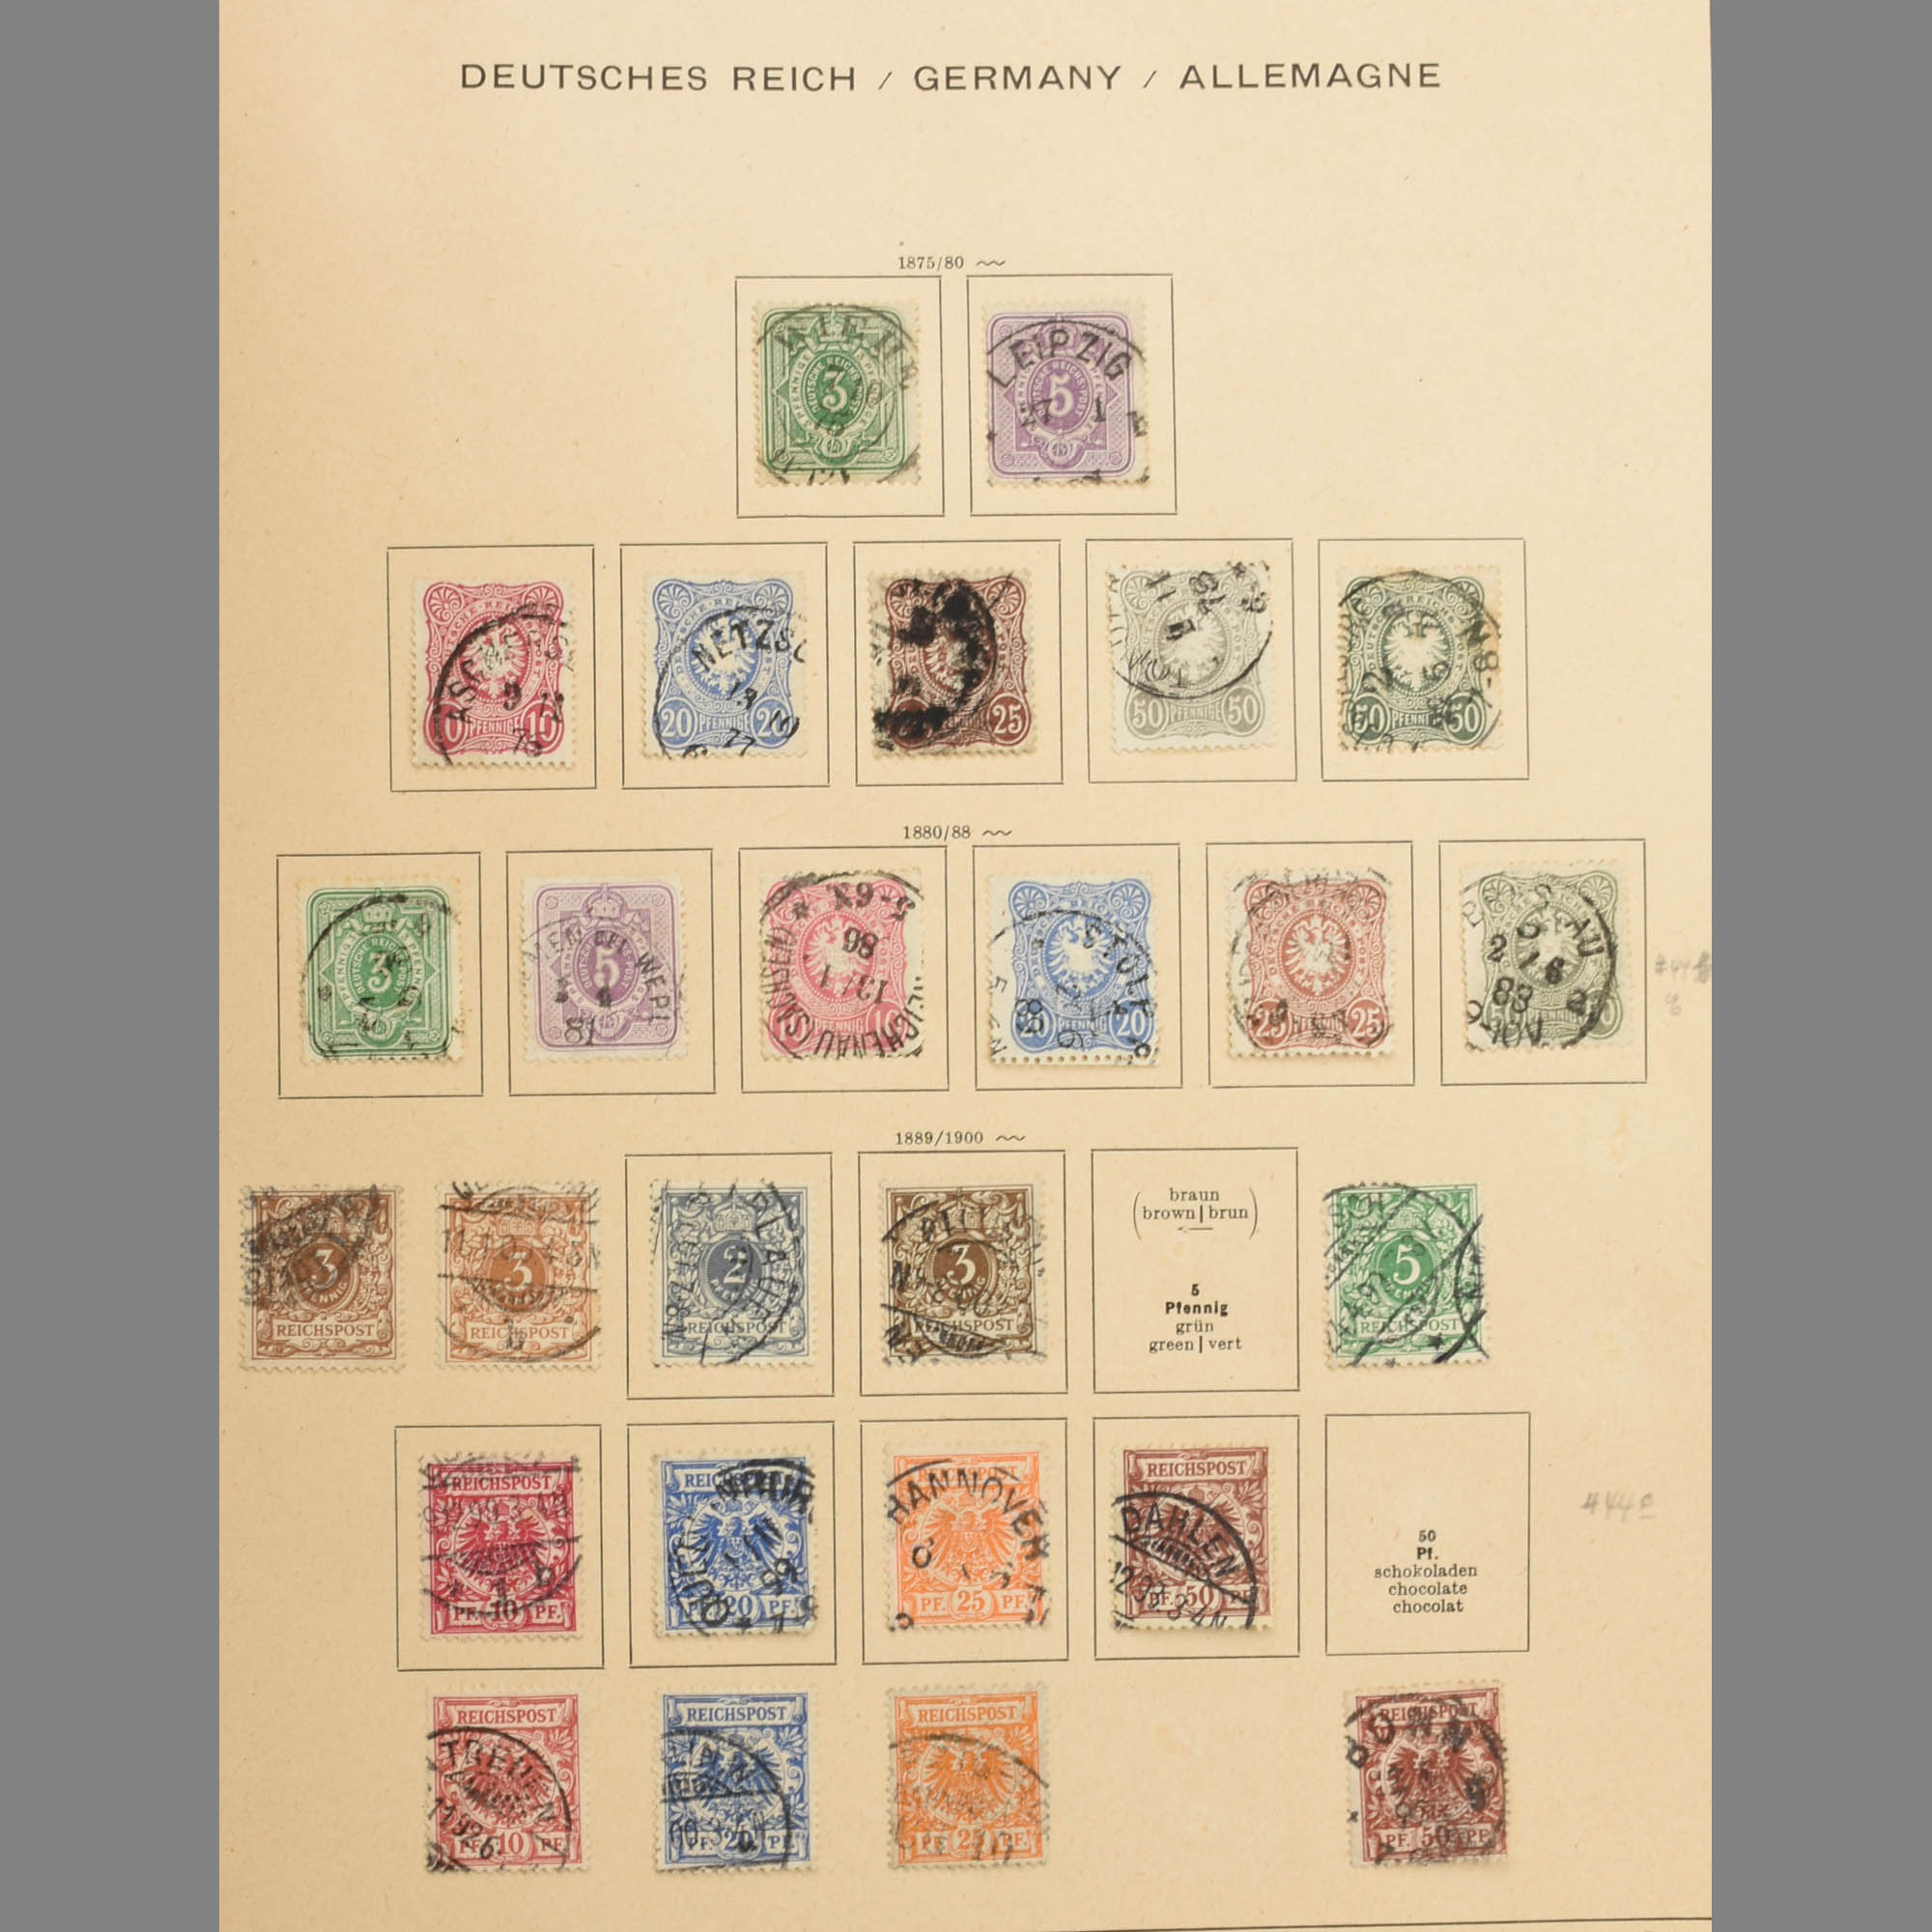 Sammlung Deutsches Reich, III. Reich mit besetzten Gebieten